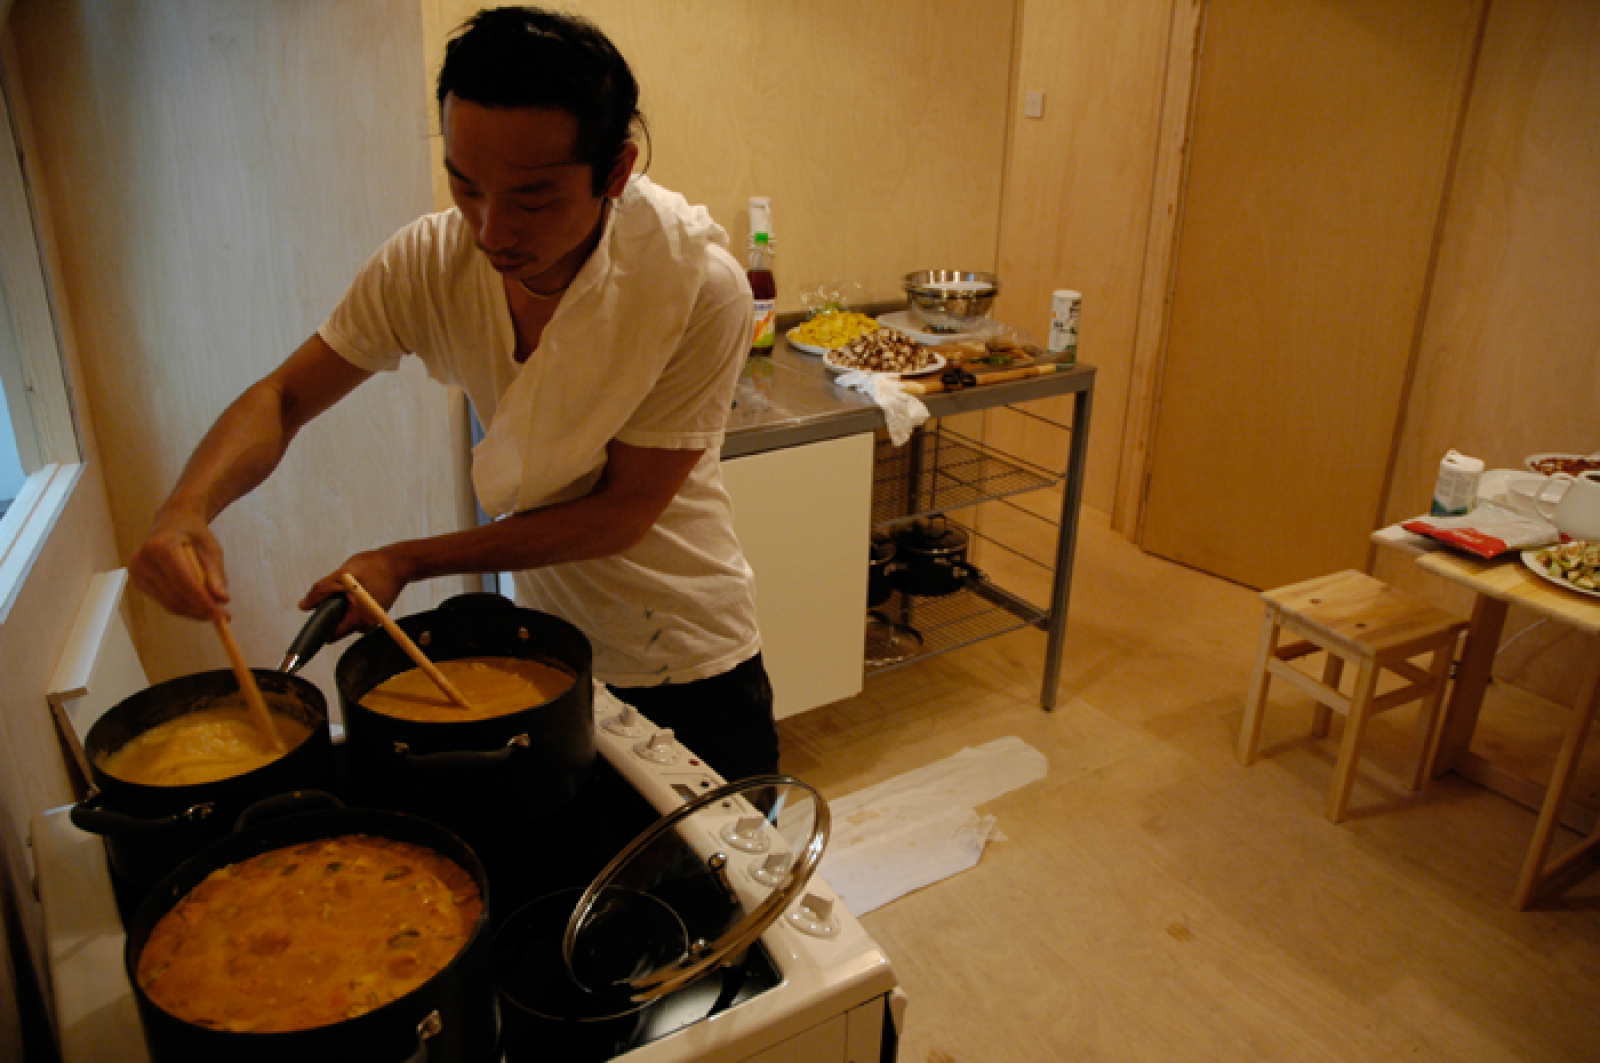 Одна из&nbsp;наиболее известных акций художника Рикрита Тривания&nbsp;— перформанс в&nbsp;галерее Сохо, во&nbsp;время которого он накормил посетителей выставки блюдом традиционной тайской кухни (1992)